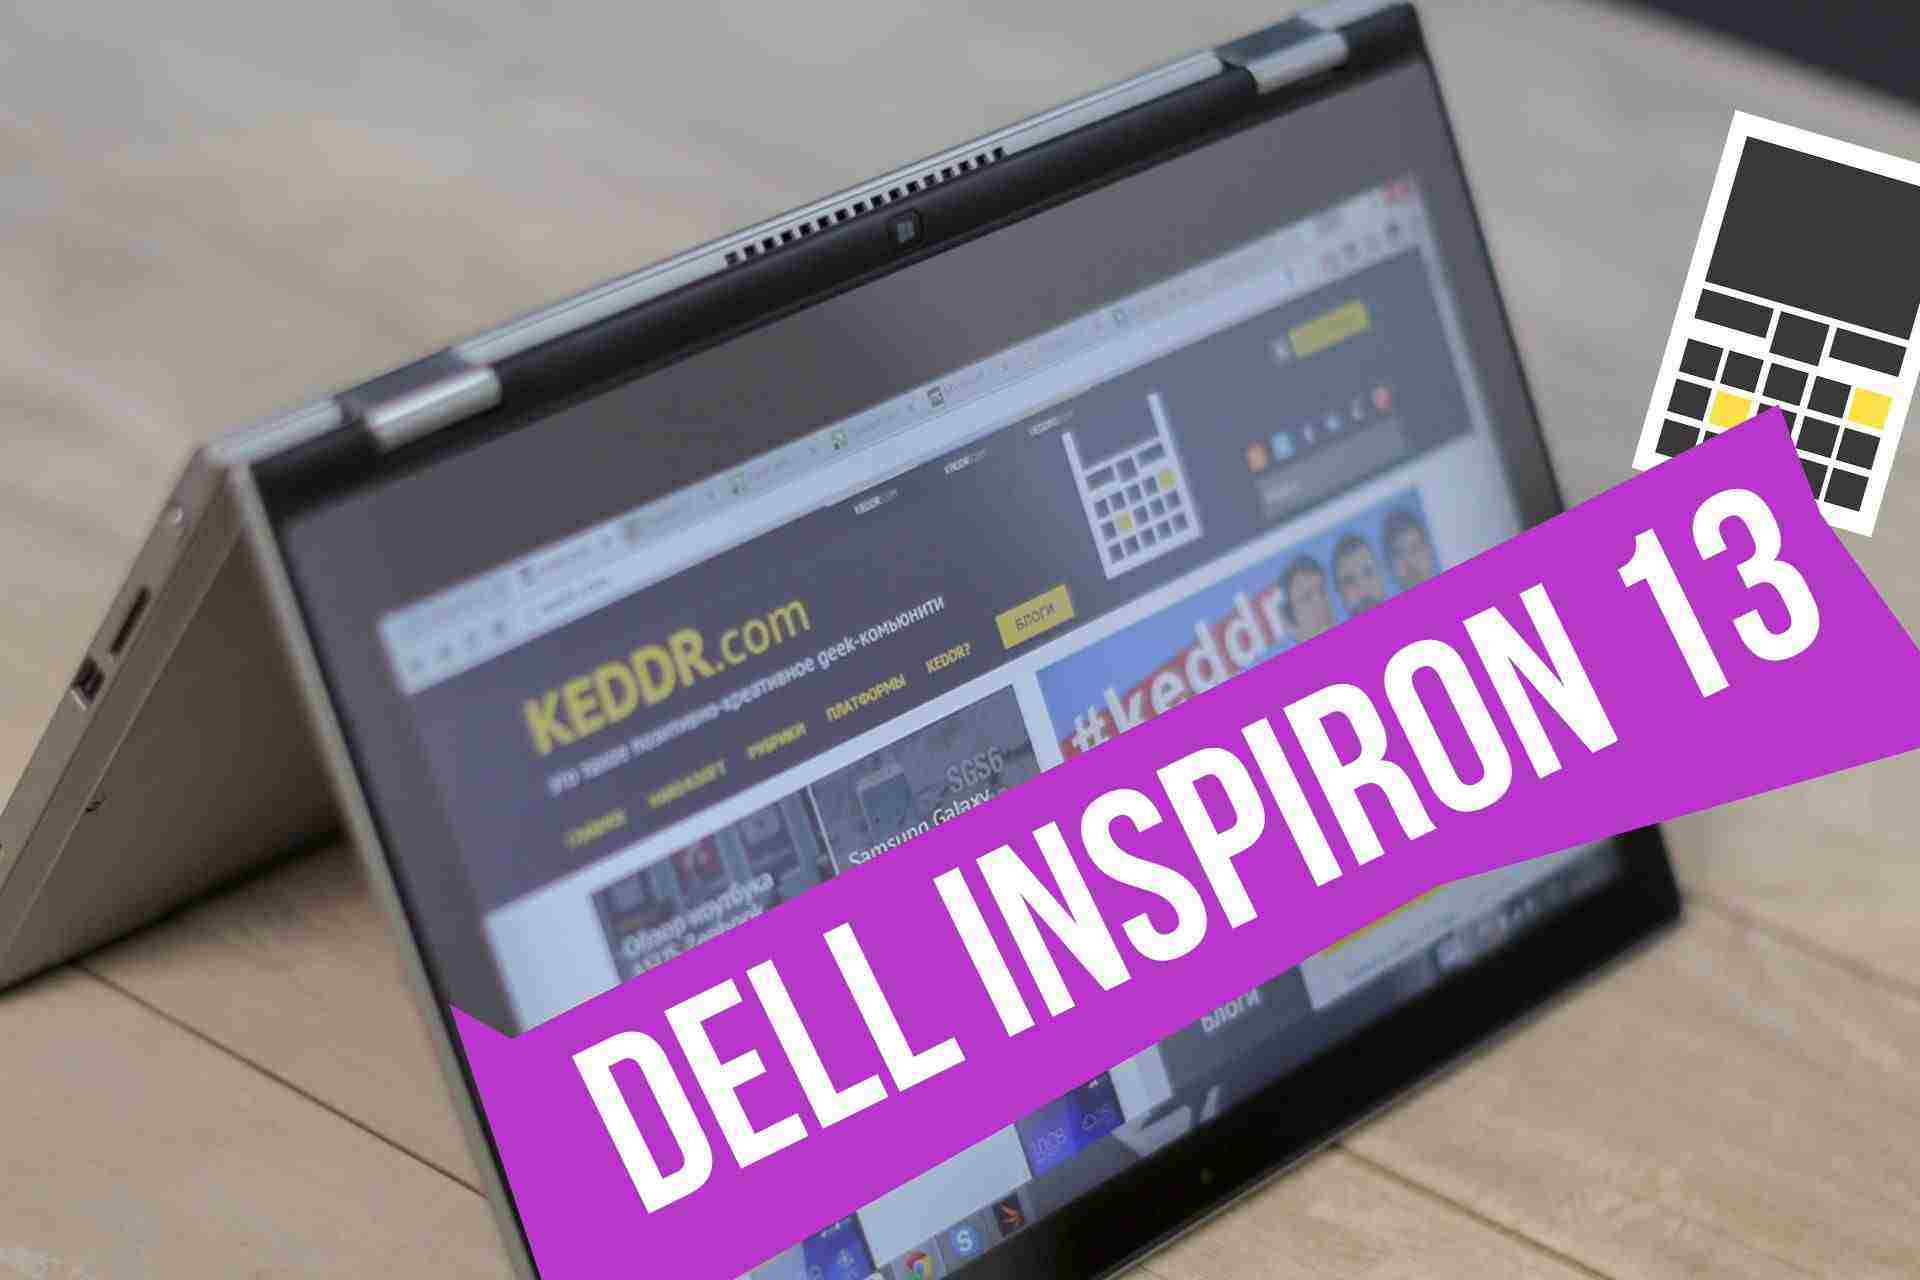 Dell Inspiron 13 2-в-1. Ноутбук-трансформер, мастер спорта по акробатике